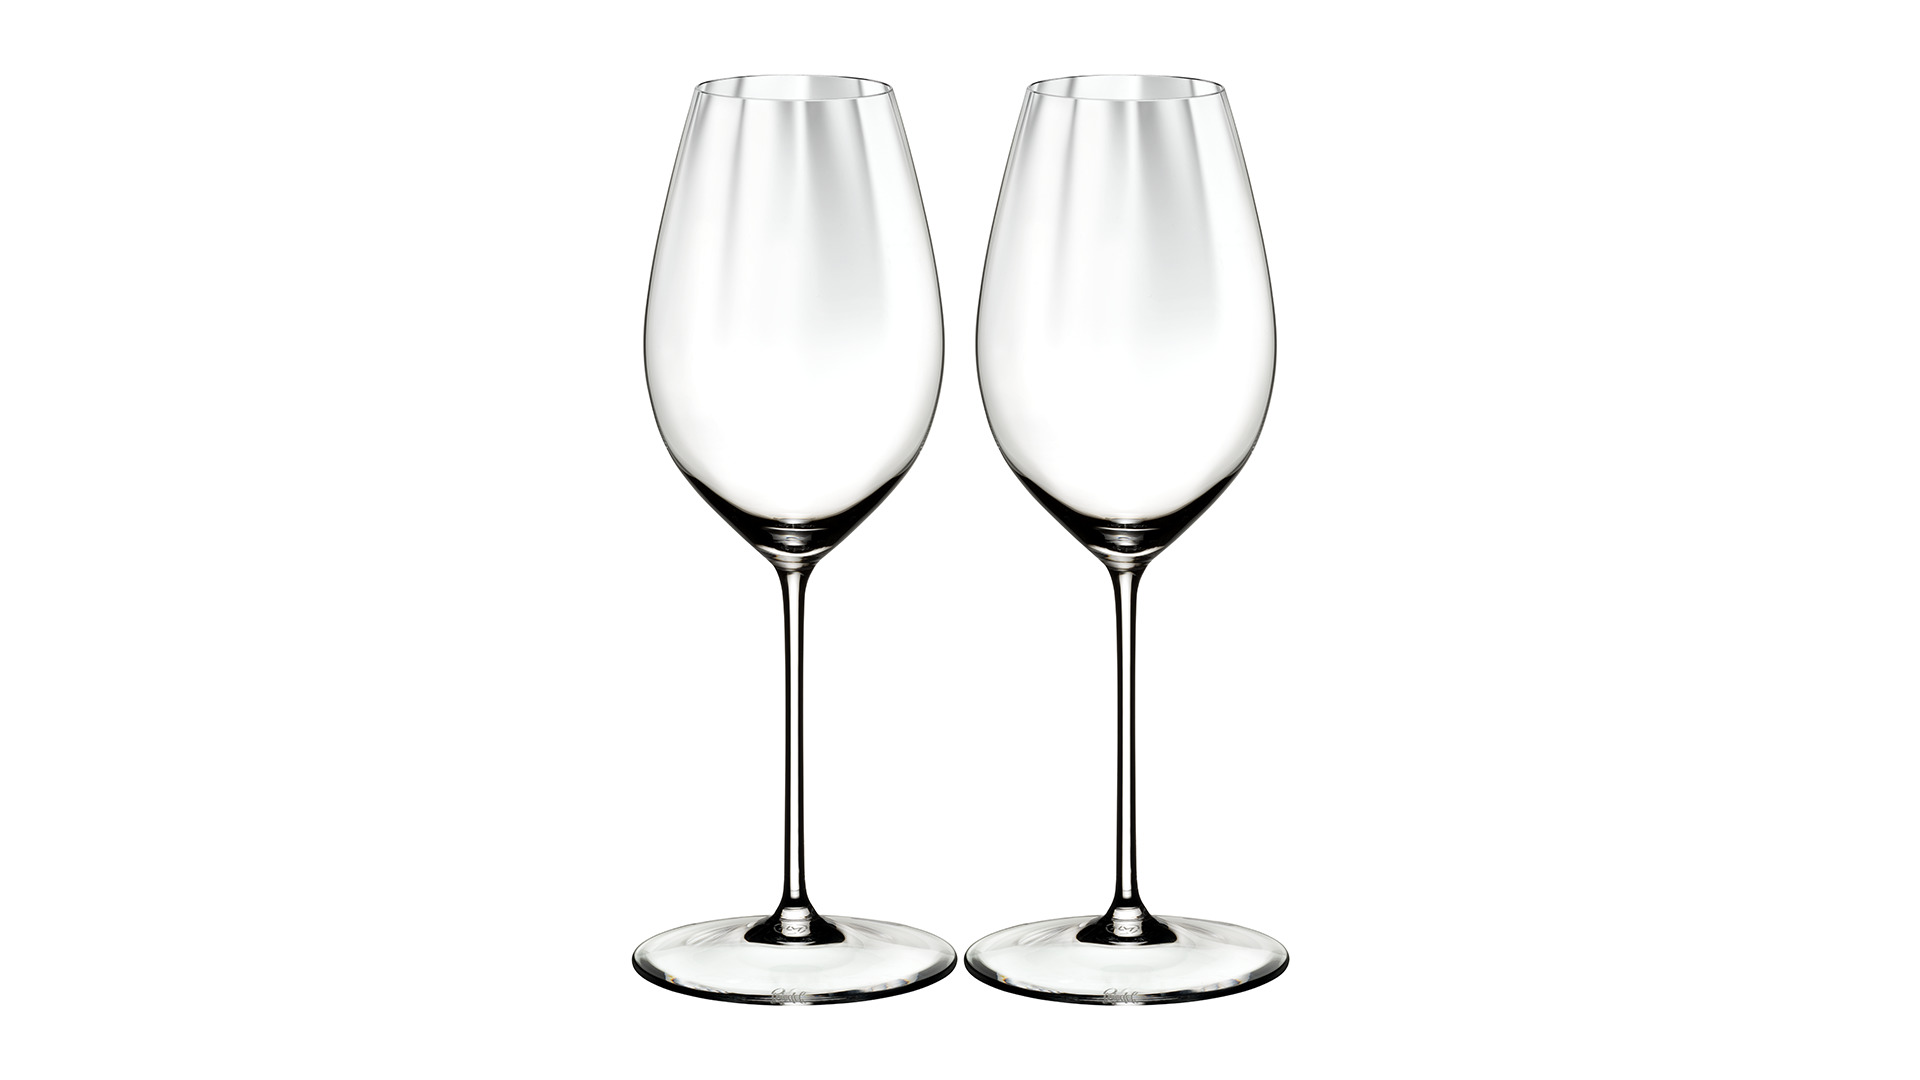 Набор бокалов для белого вина Riedel Performance, совиньон блан 375 мл, h24,5 см, 2 шт